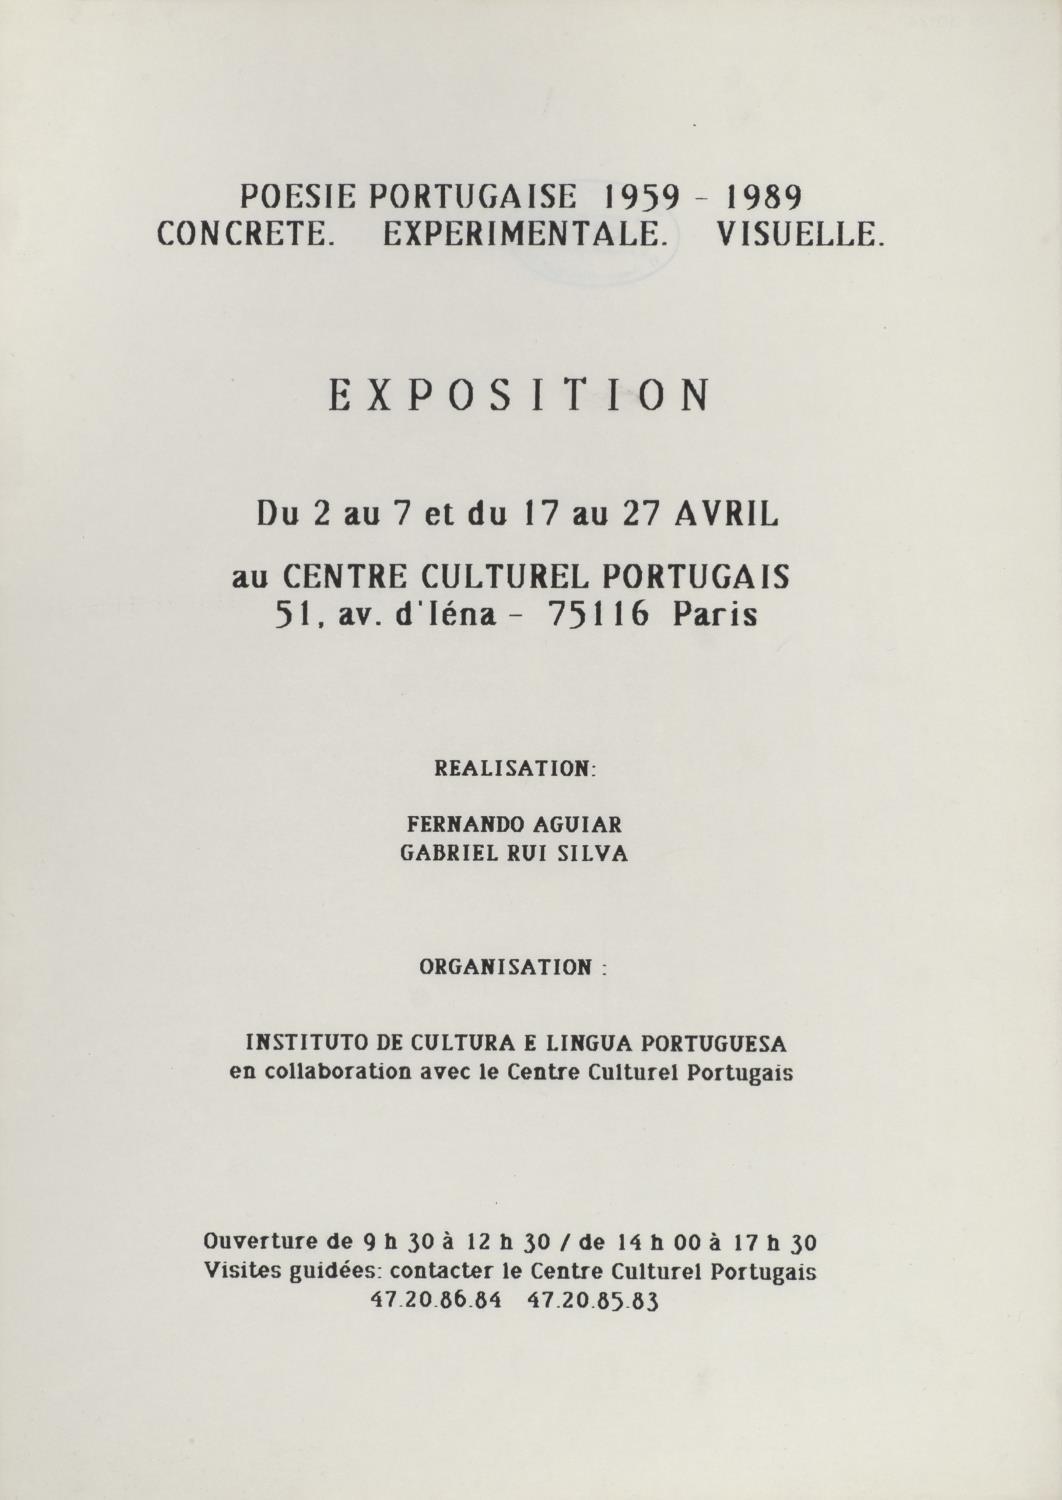 Concrete. Experimentale. Visuelle. Poesie Portugaise, 1959 – 1989